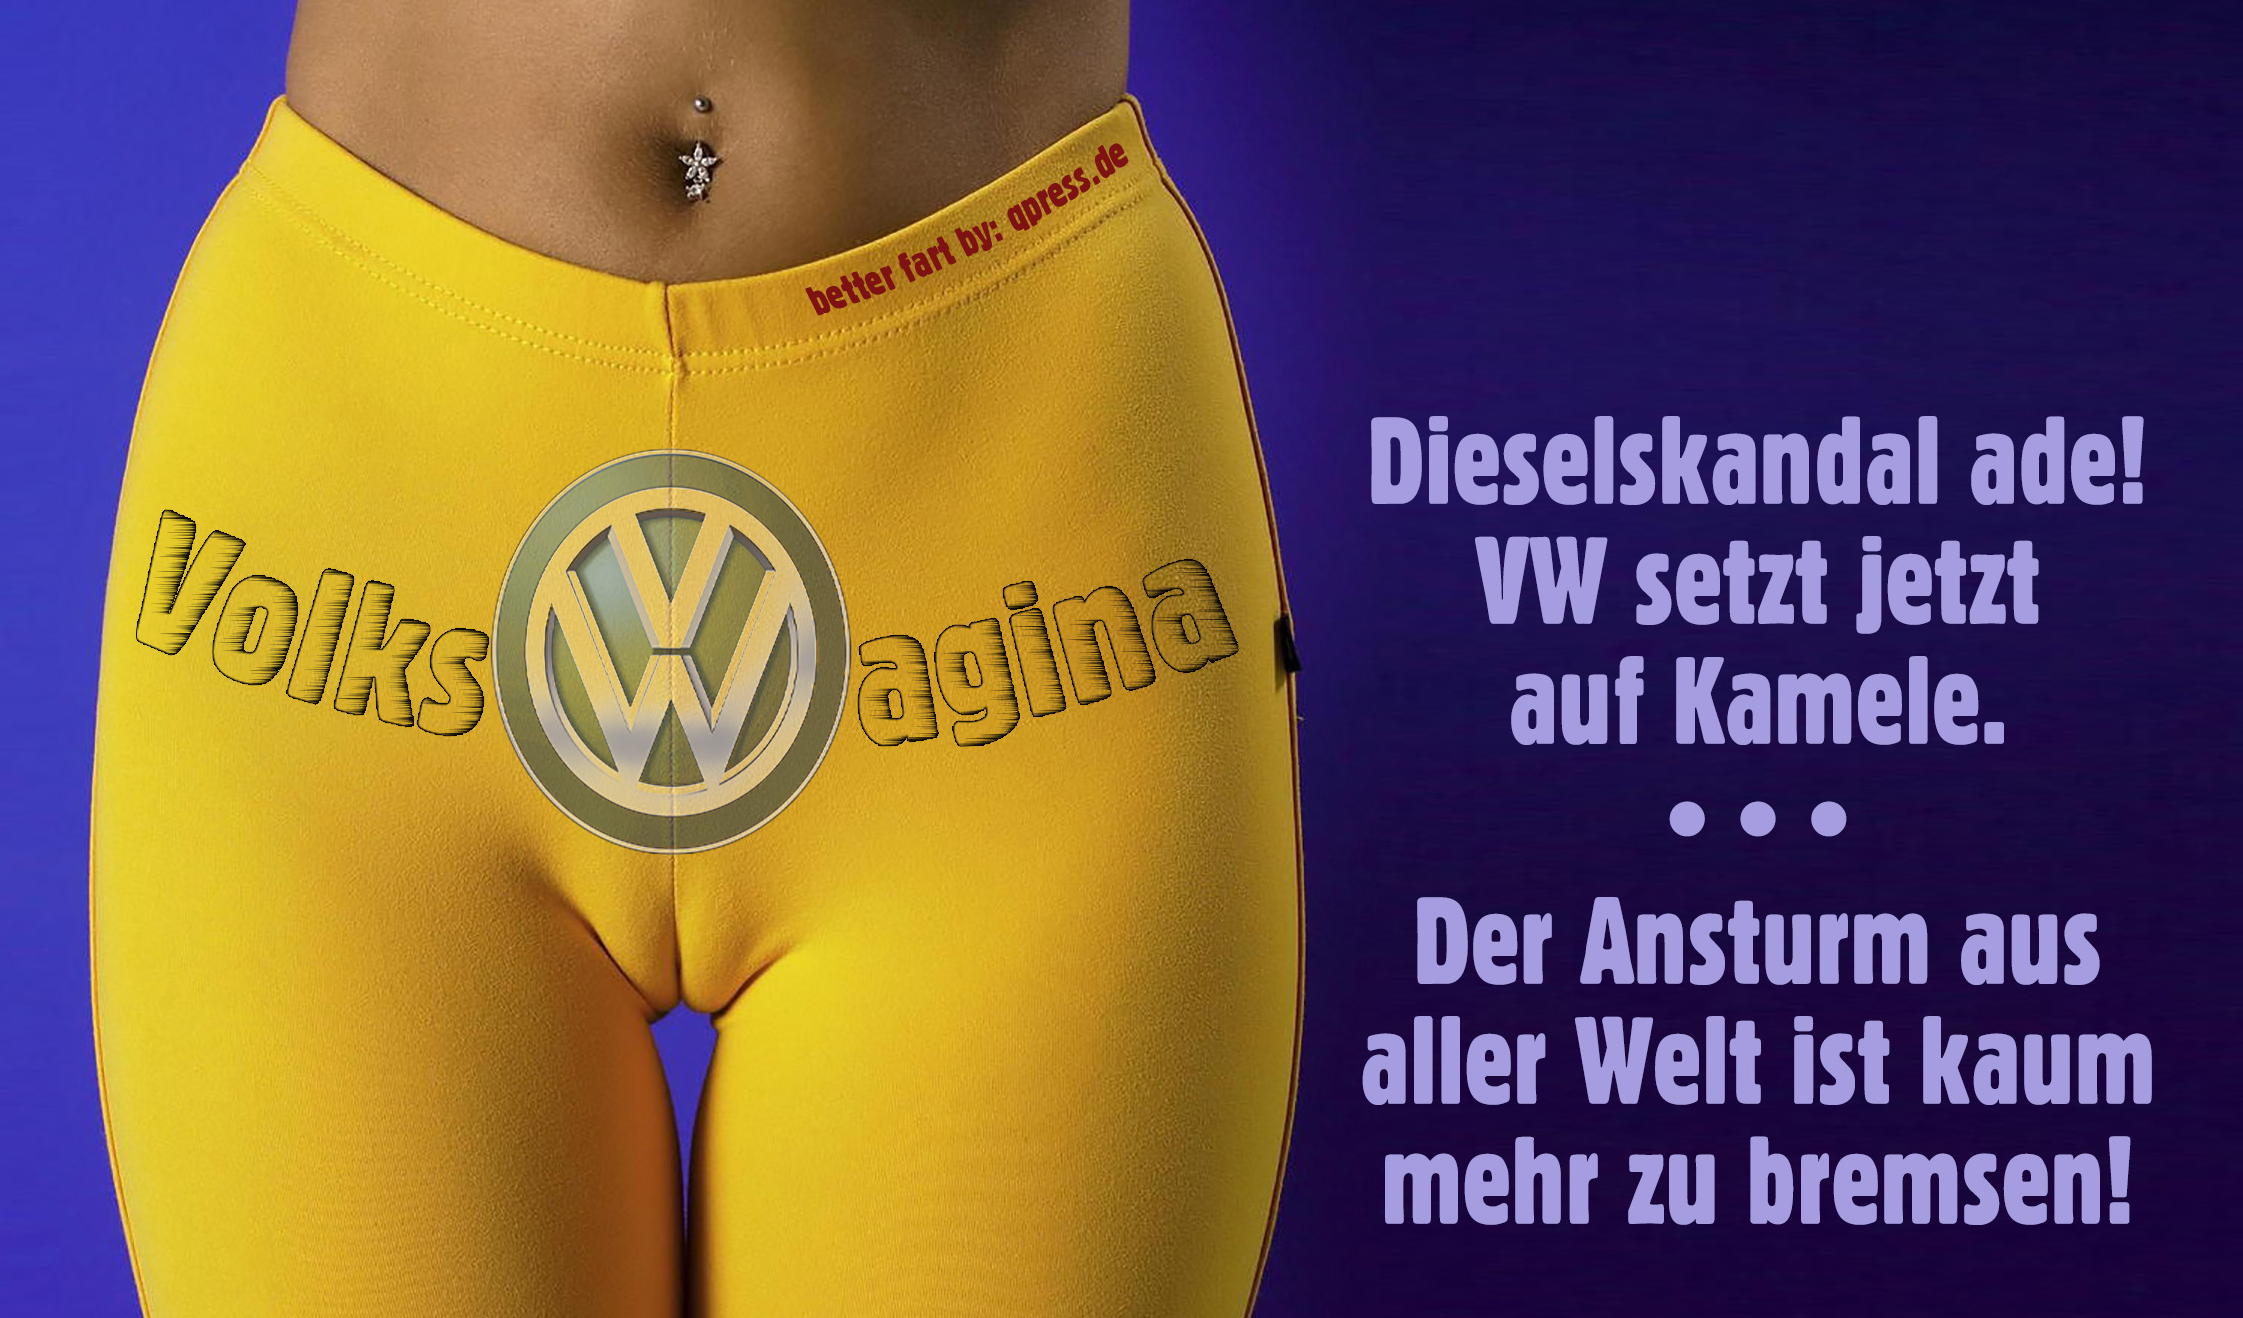 Volkswagen Volksvagina cameltoe Sexismus VW DieselGate Zuwanderung Migration Gleichsetzung qpress